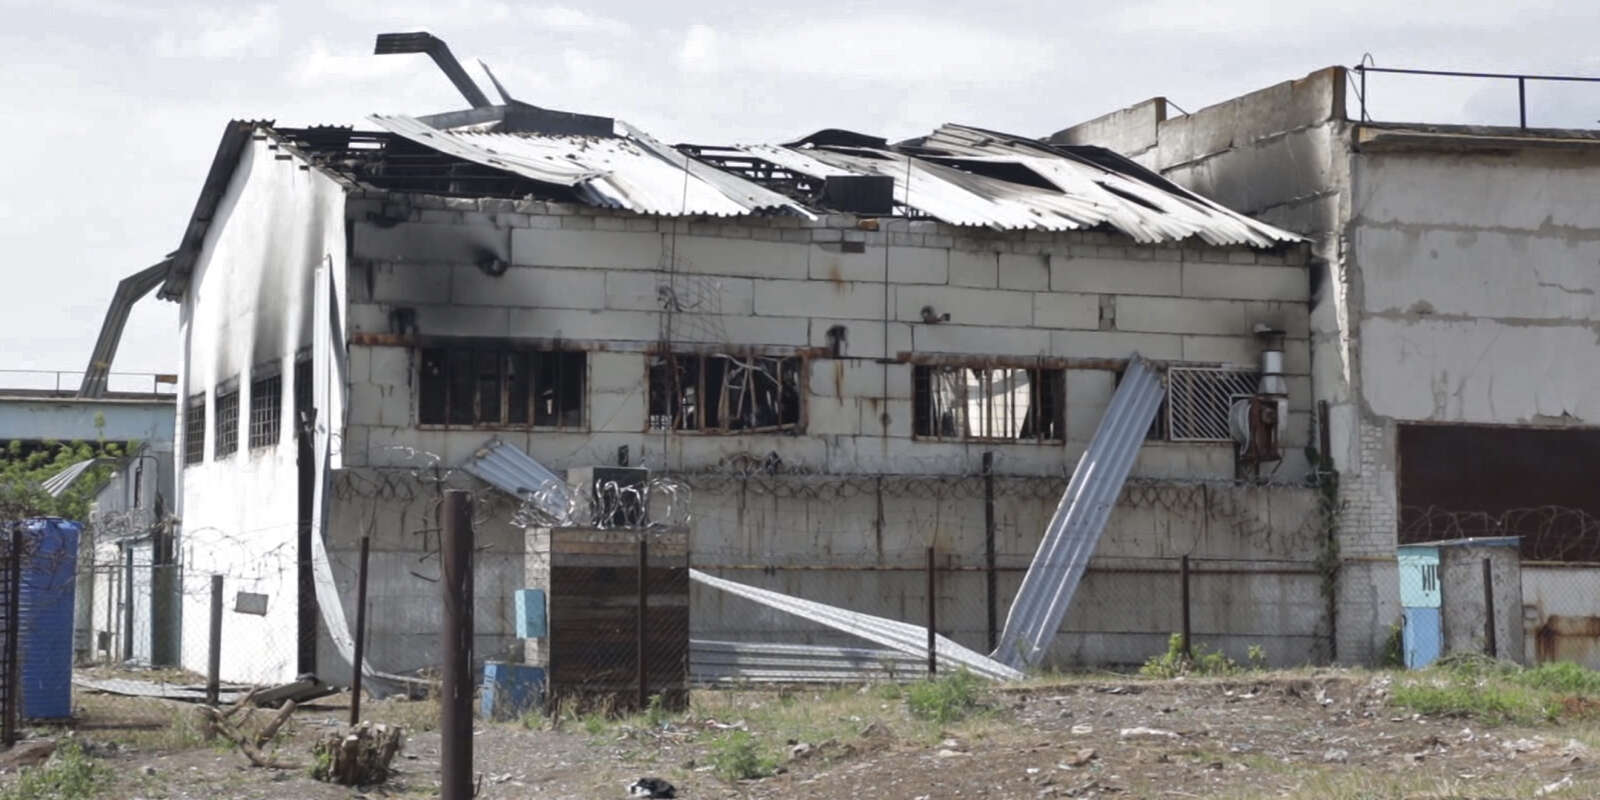 Cette photographie tirée d’une vidéo montre une vue d’une caserne détruite dans une prison d’Olenivka, dans une zone contrôlée par les forces séparatistes prorusses, dans l’est de l’Ukraine, le 29 juillet 2022.